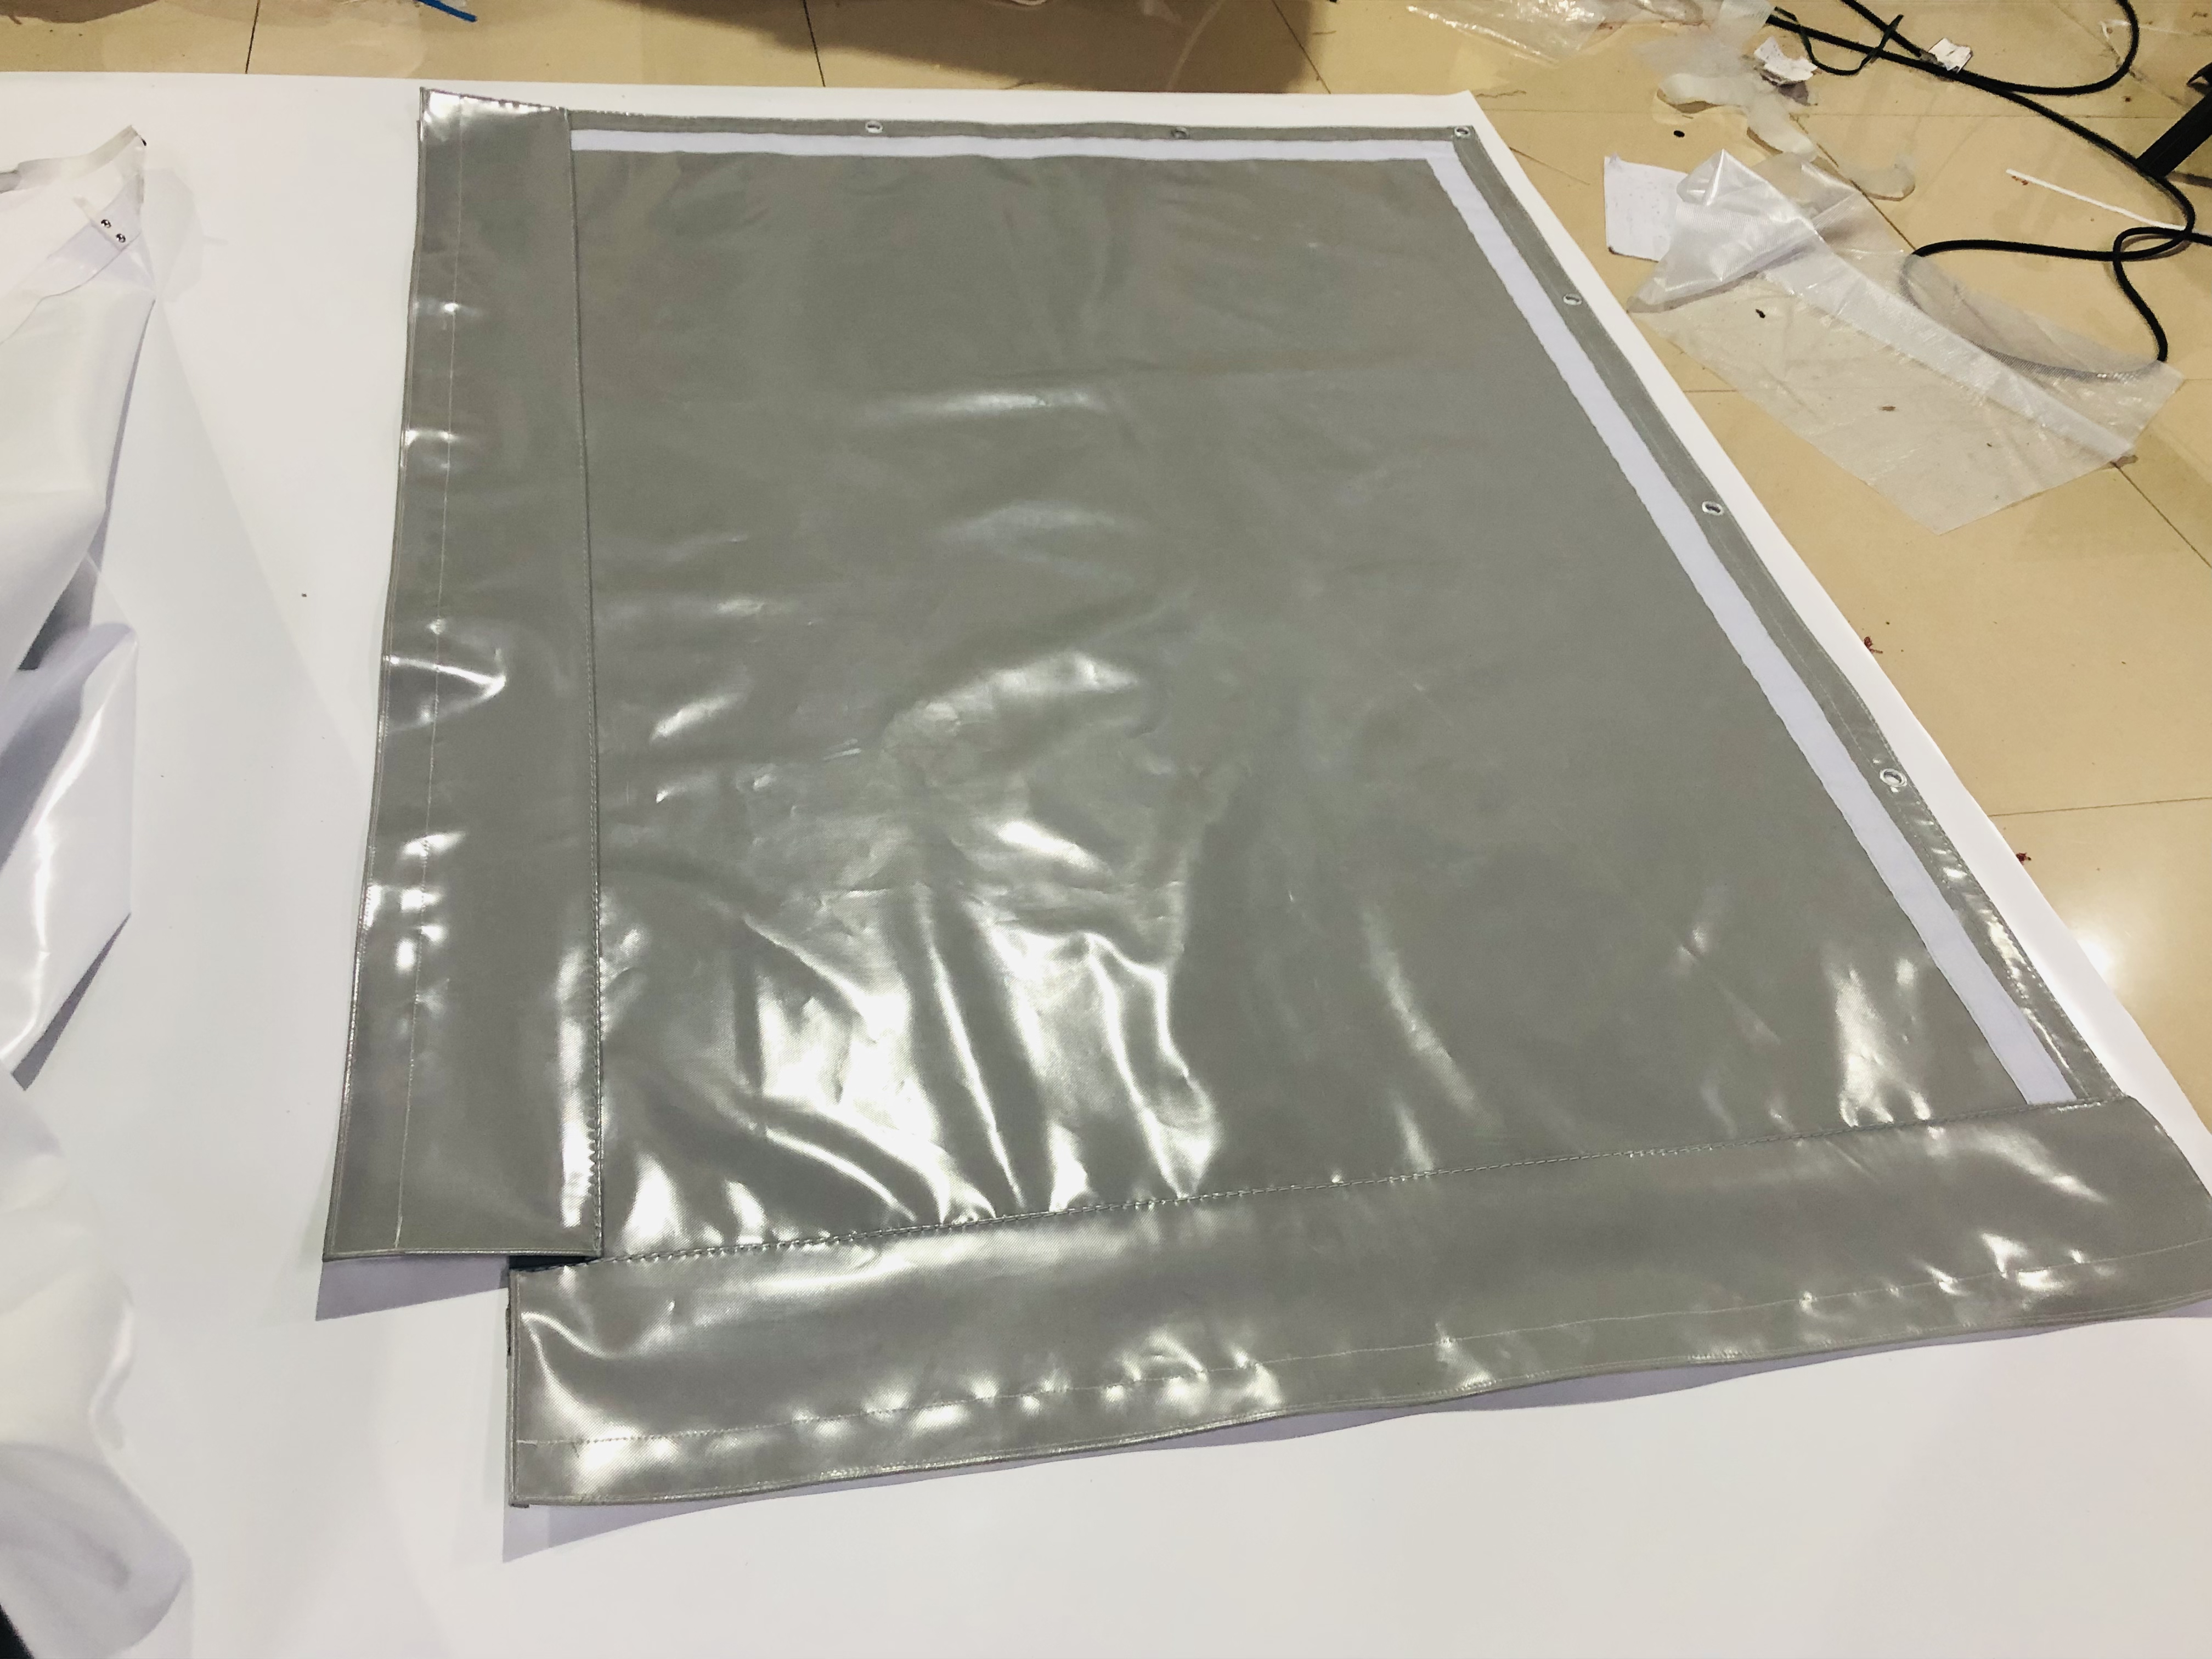 sound barrier sheets,防音,Sound barrier,soundproof blanket